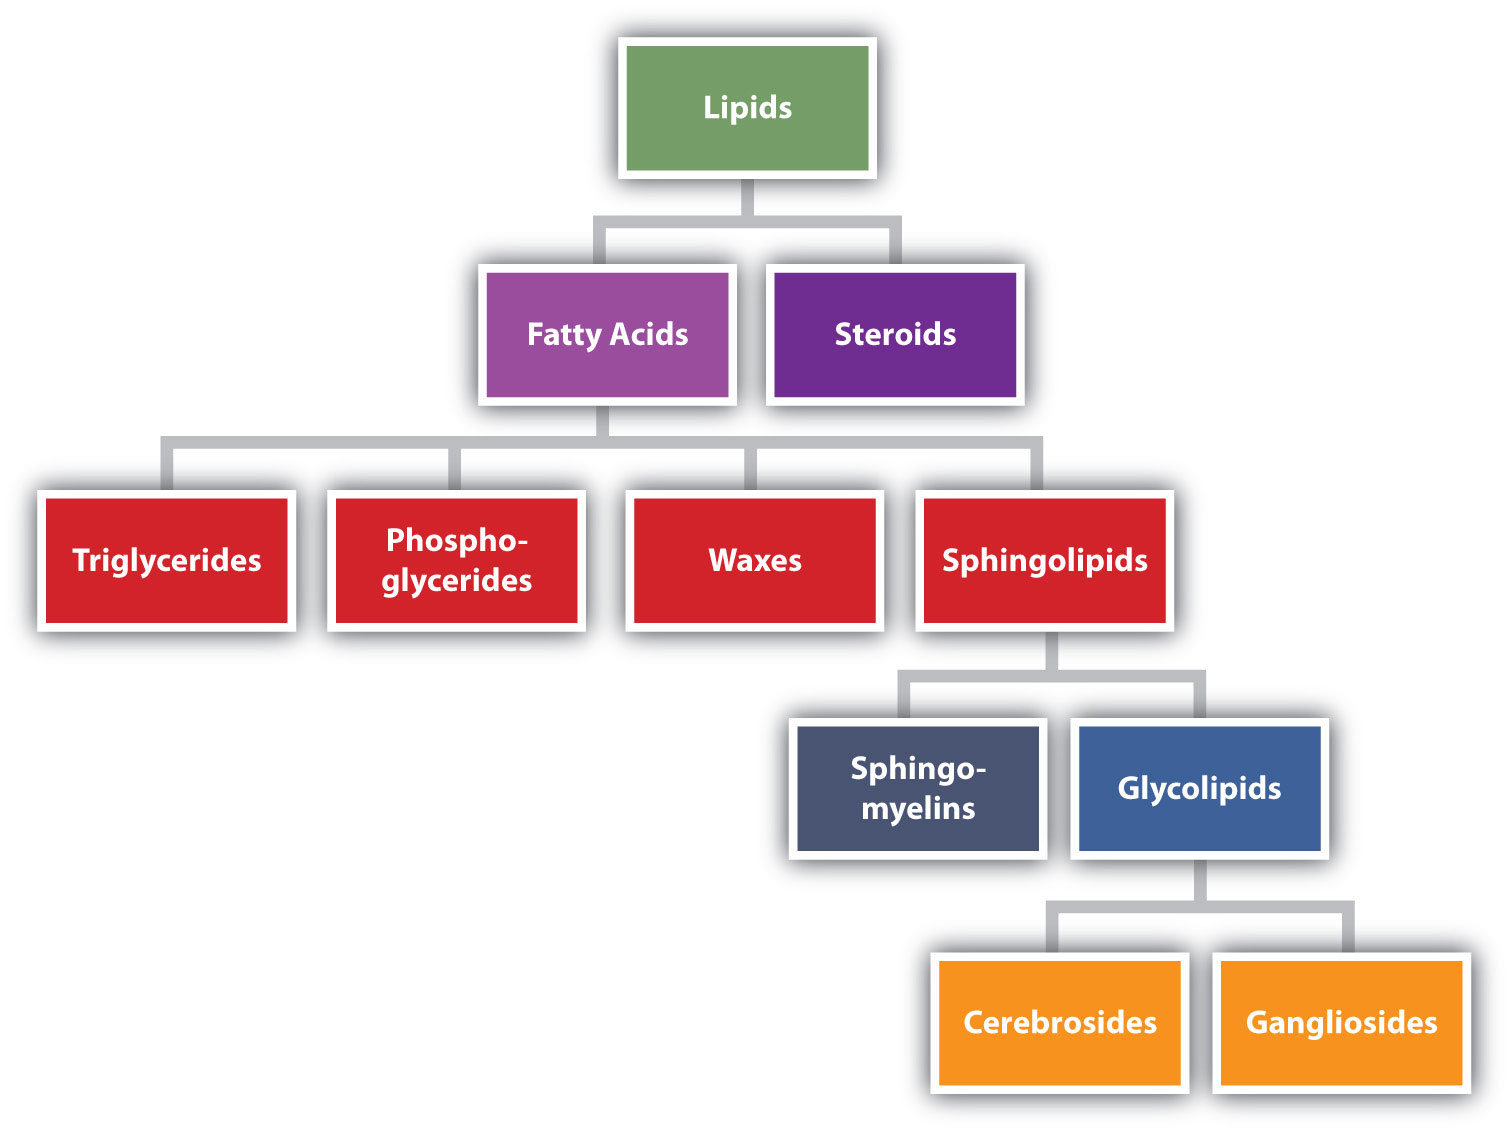 Lípidos categorizados en ácidos grasos y esteroides. Los ácidos grasos se separan en triglicéridos, fosfo-glicéridos, ceras y esfingolípidos. Los esfingolípidos se separan en esfingo-mielinas y glicolípidos. Los glicolípidos se separan en cerebrosidos y gangliósidos.